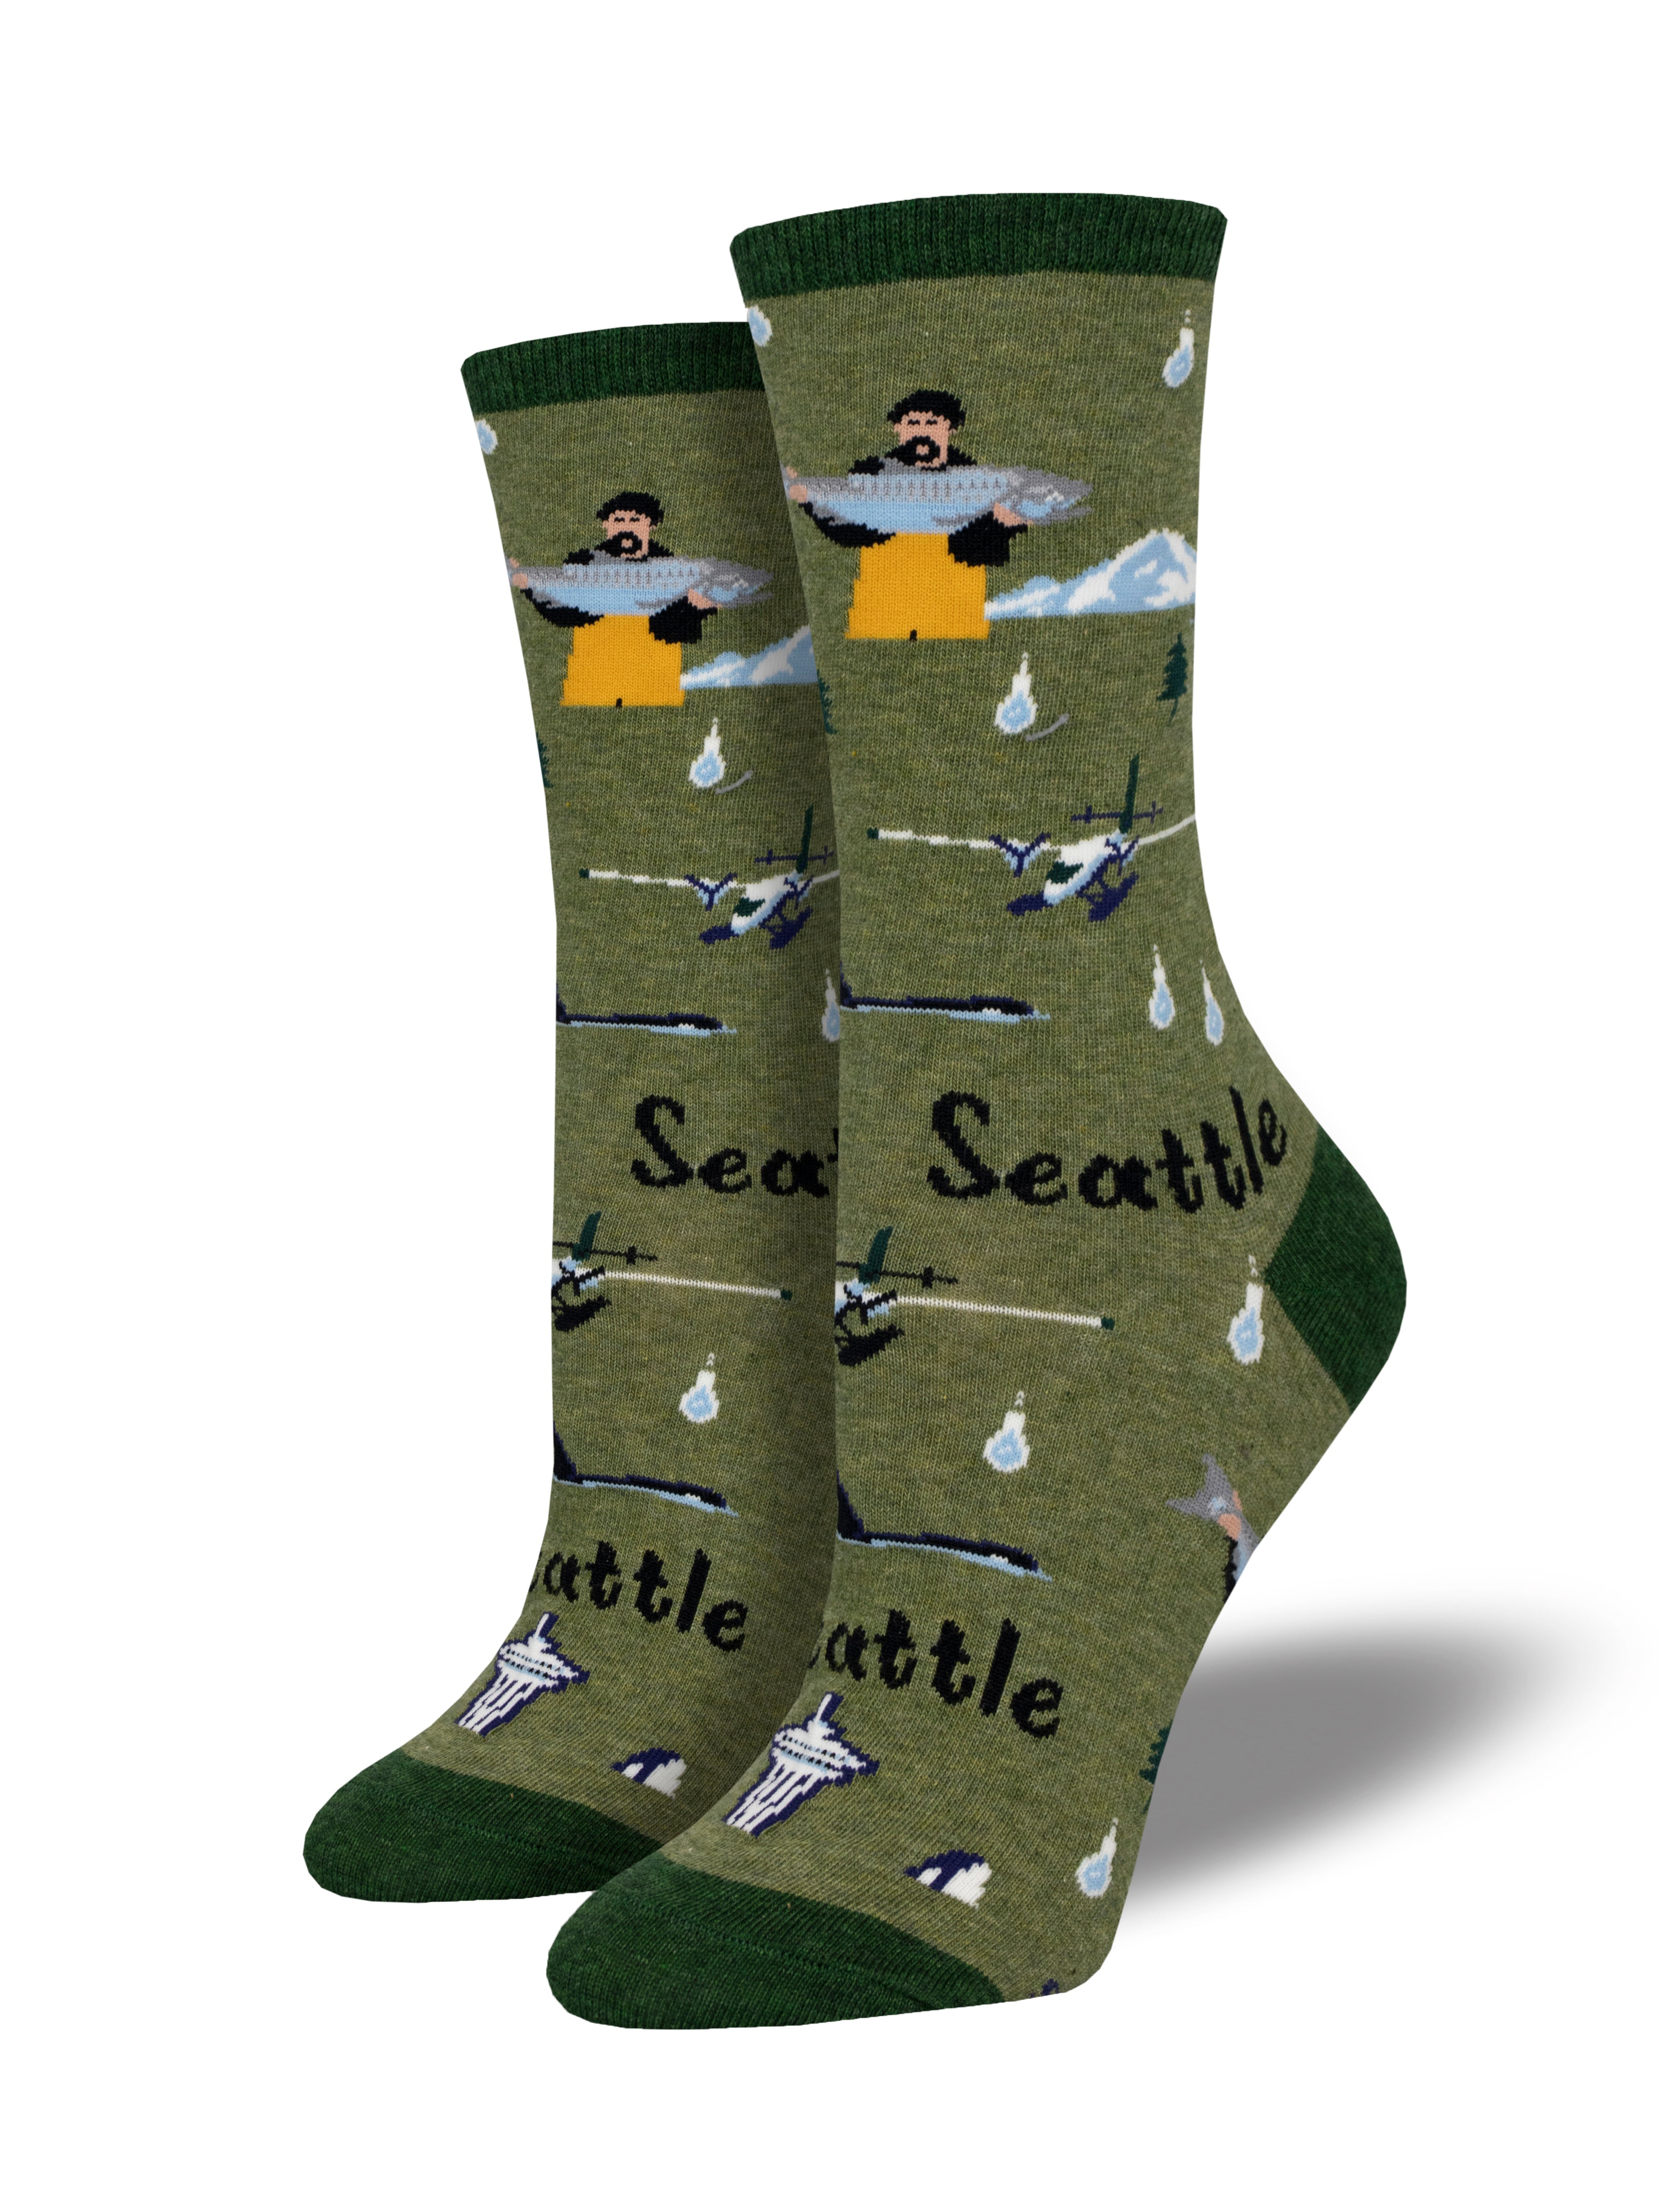 Women's "Seattle" Socks